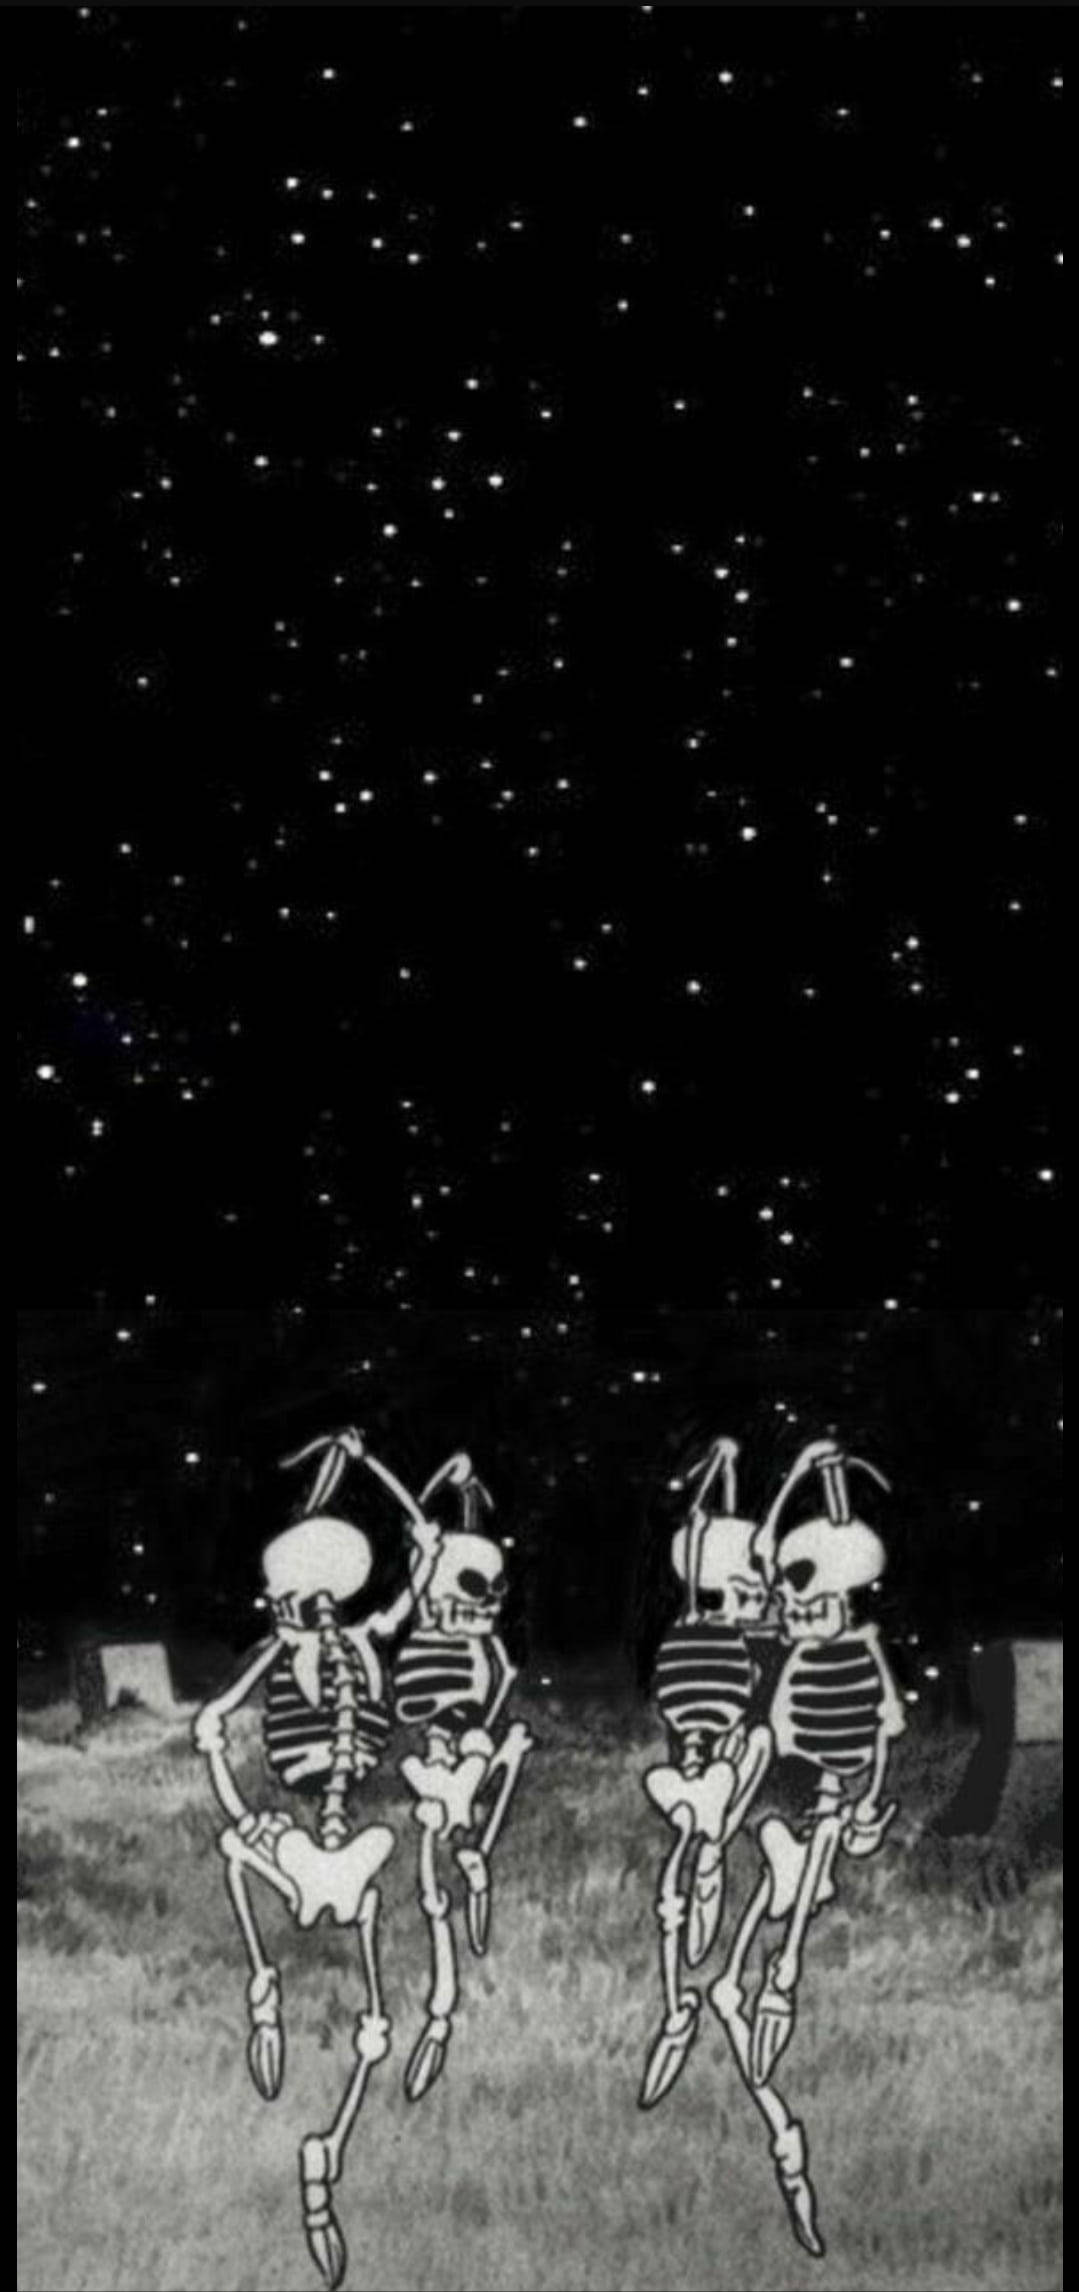 Dancing Group Skeleton Aesthetic Night Sky